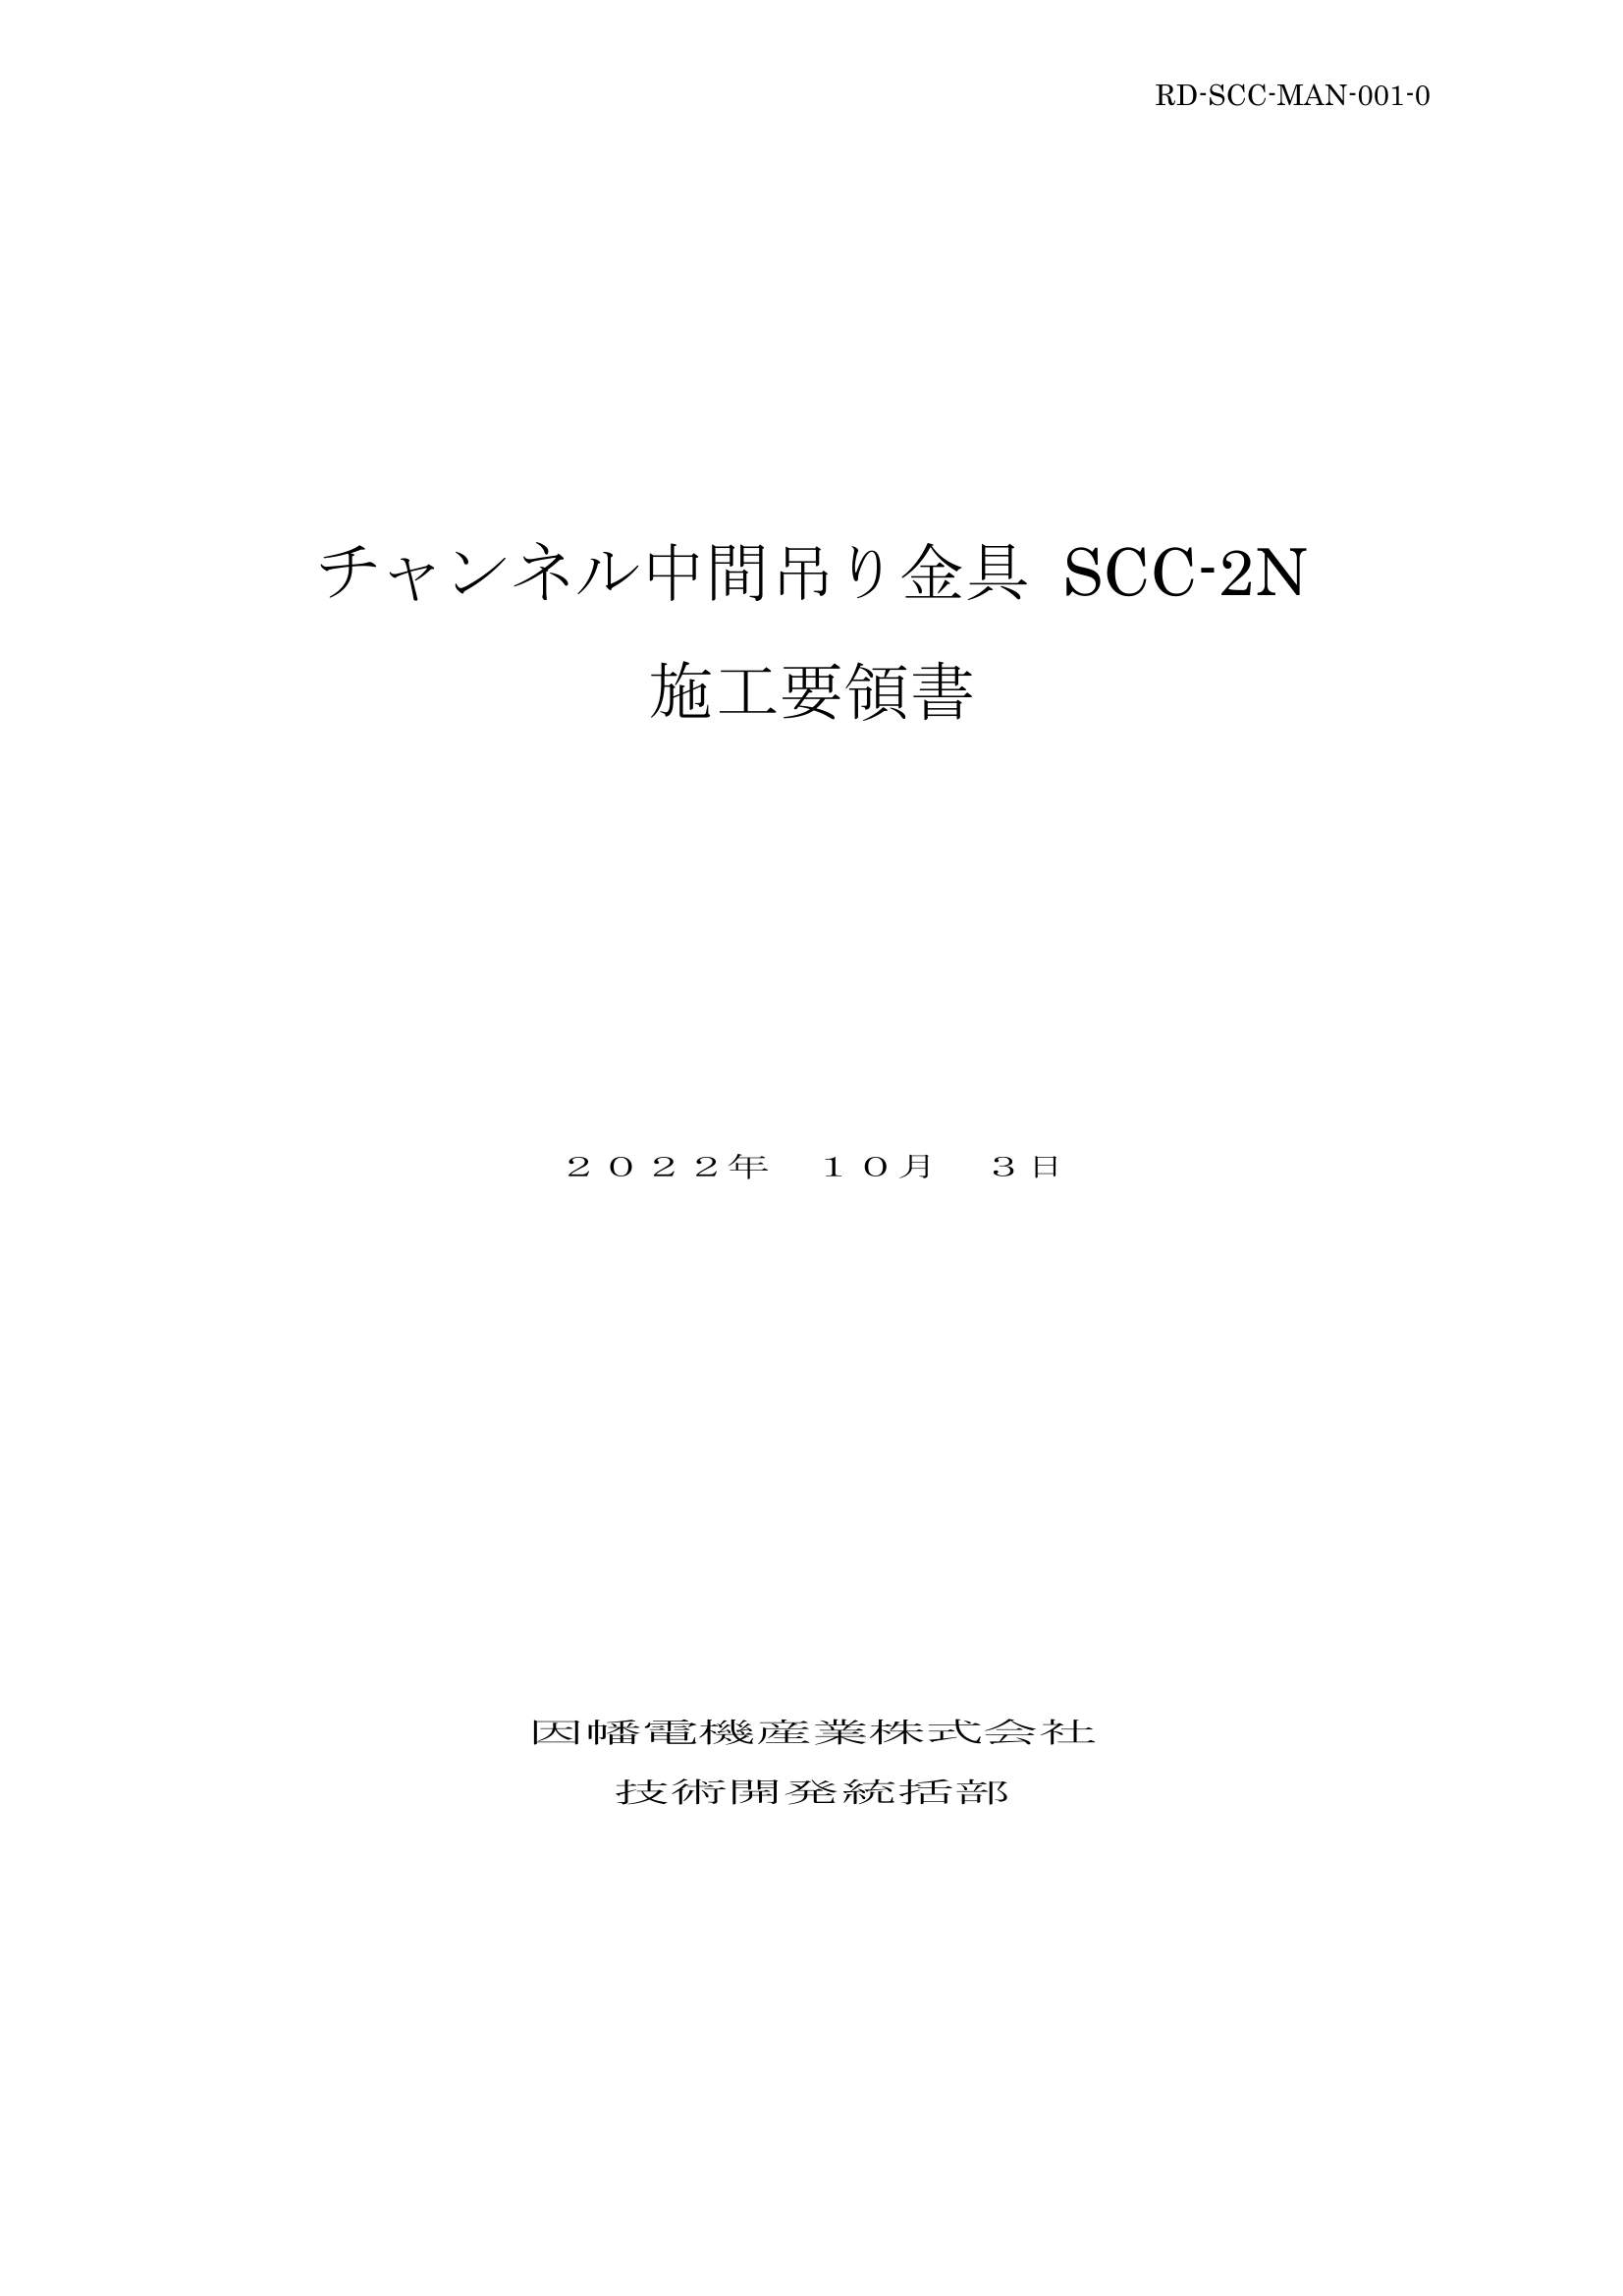 SCC-2N_施工要領書_20221003.pdf